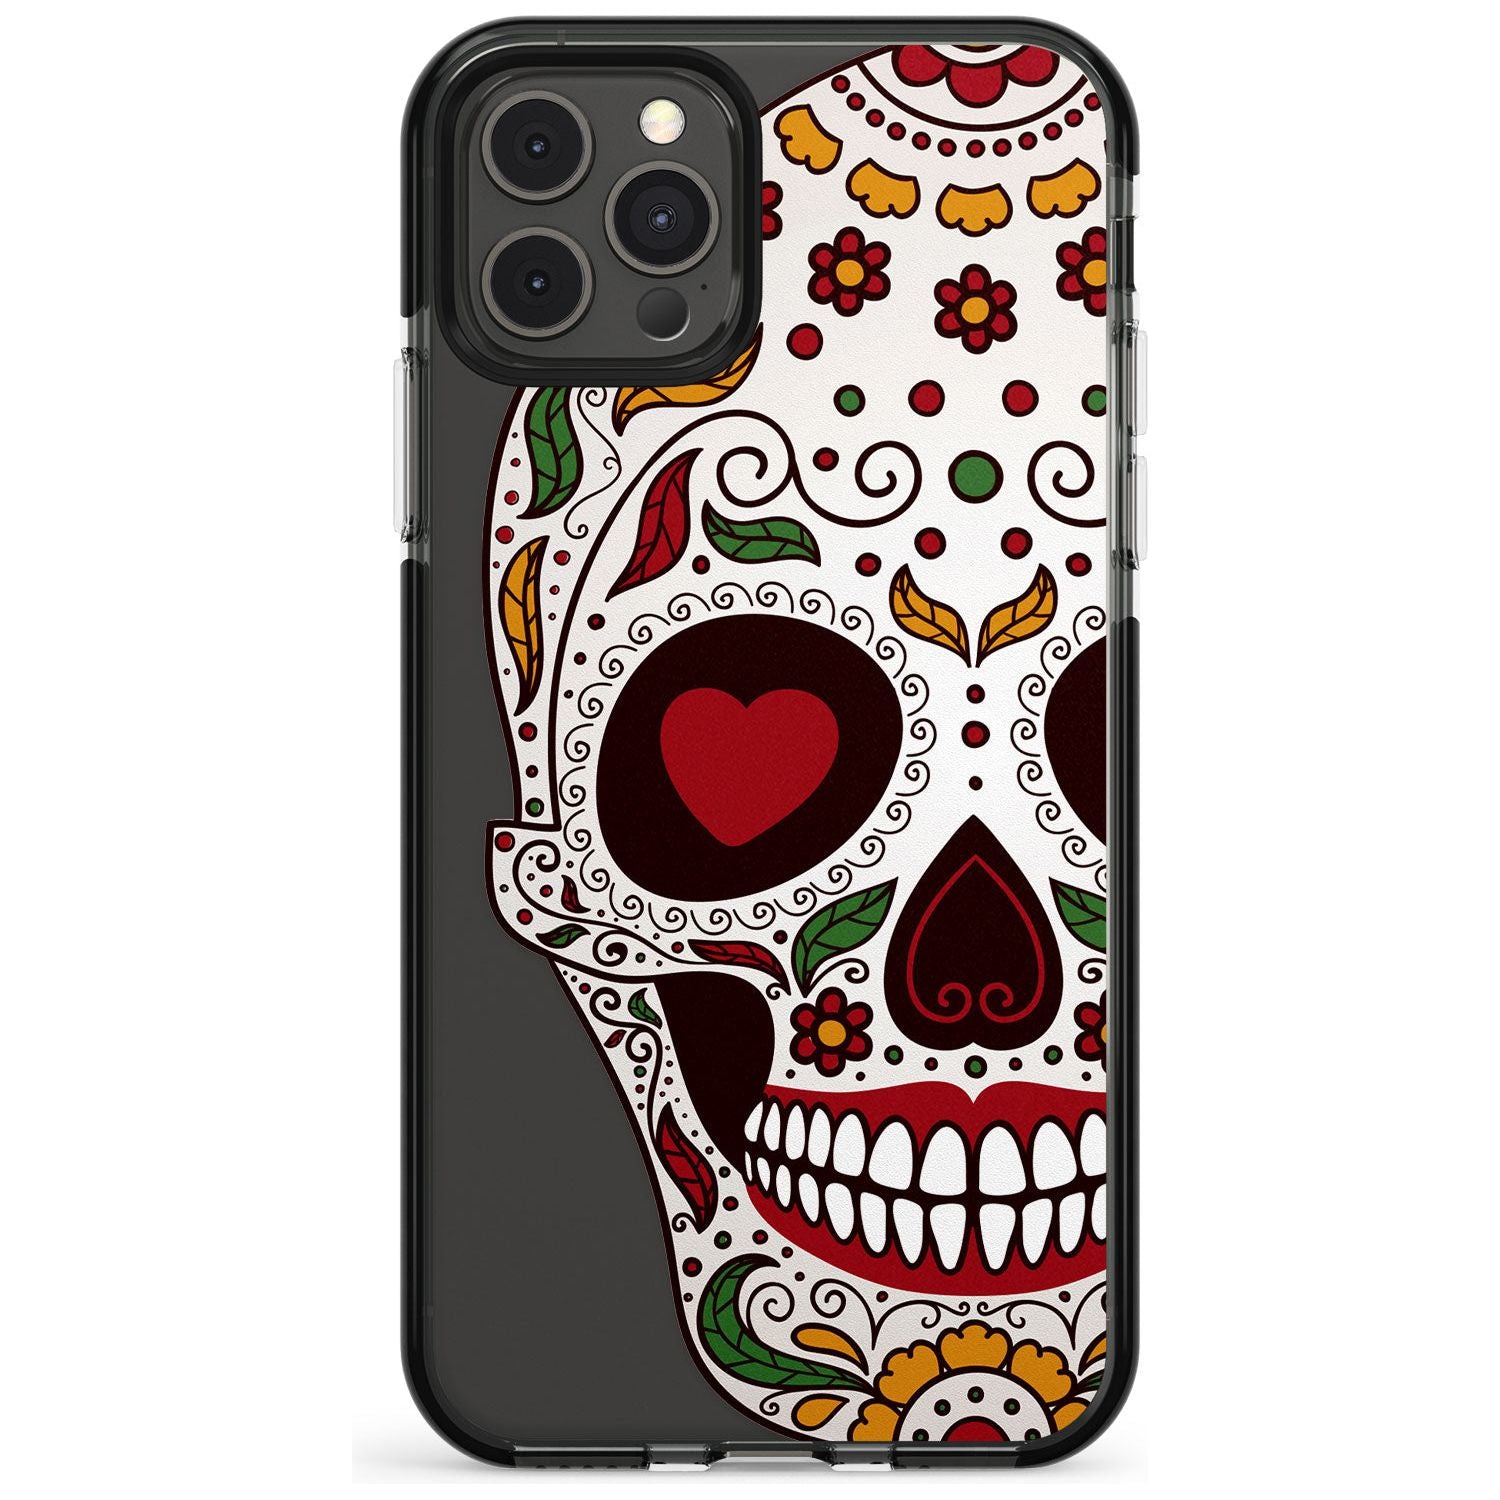 Autumn Sugar Skull Black Impact Phone Case for iPhone 11